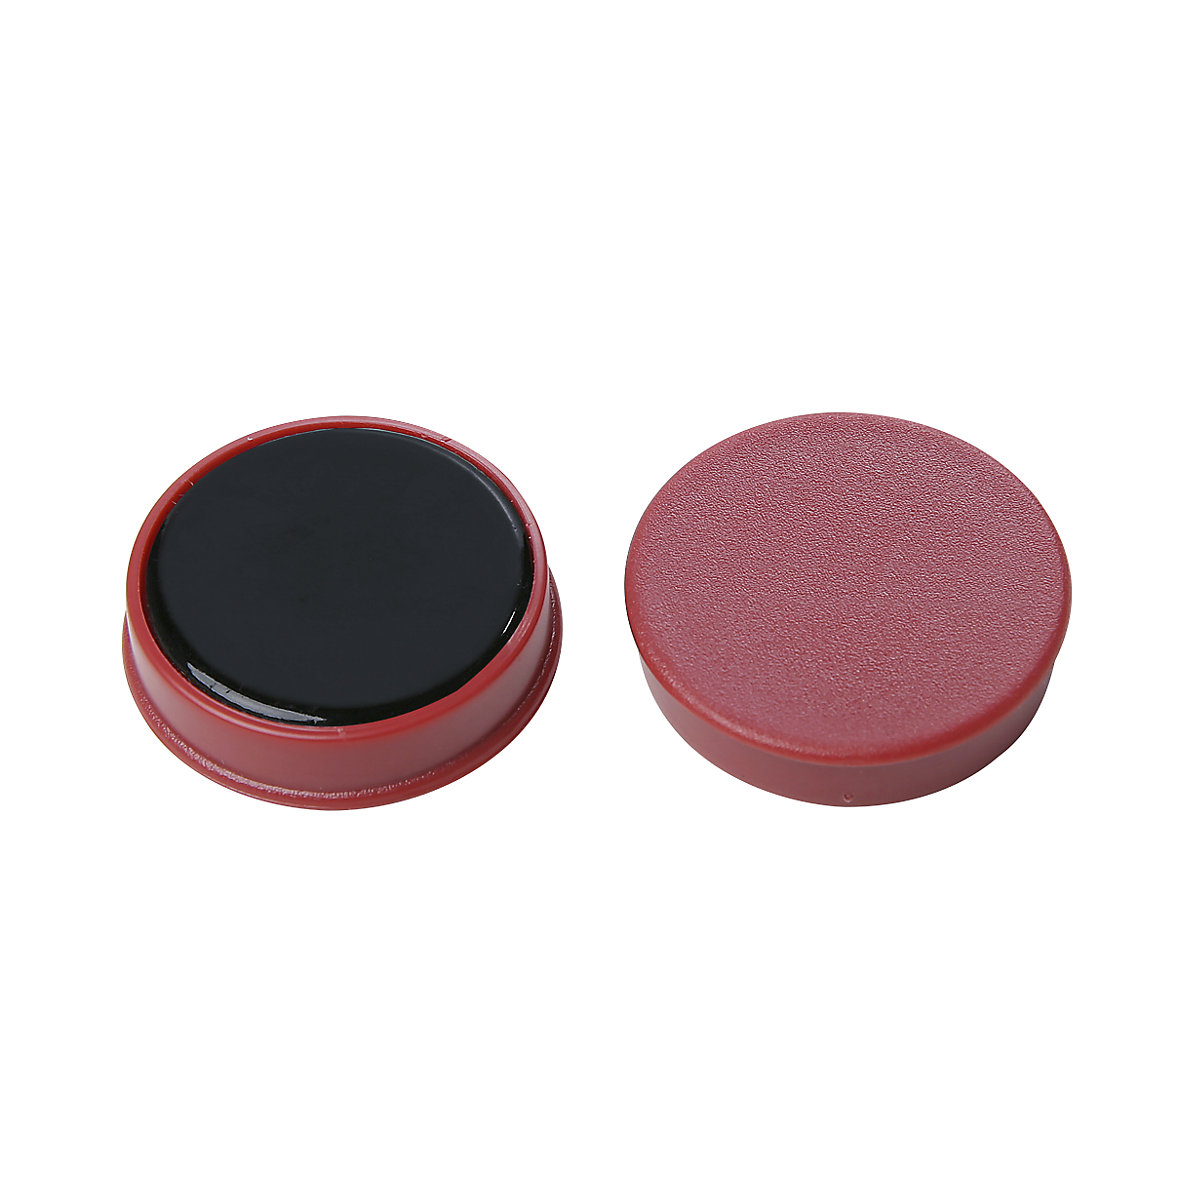 Műanyag kerek mágnes – eurokraft basic, színek szerint osztályozva, kék, sárga, piros, Ø 20 mm, cs. e. 72 db